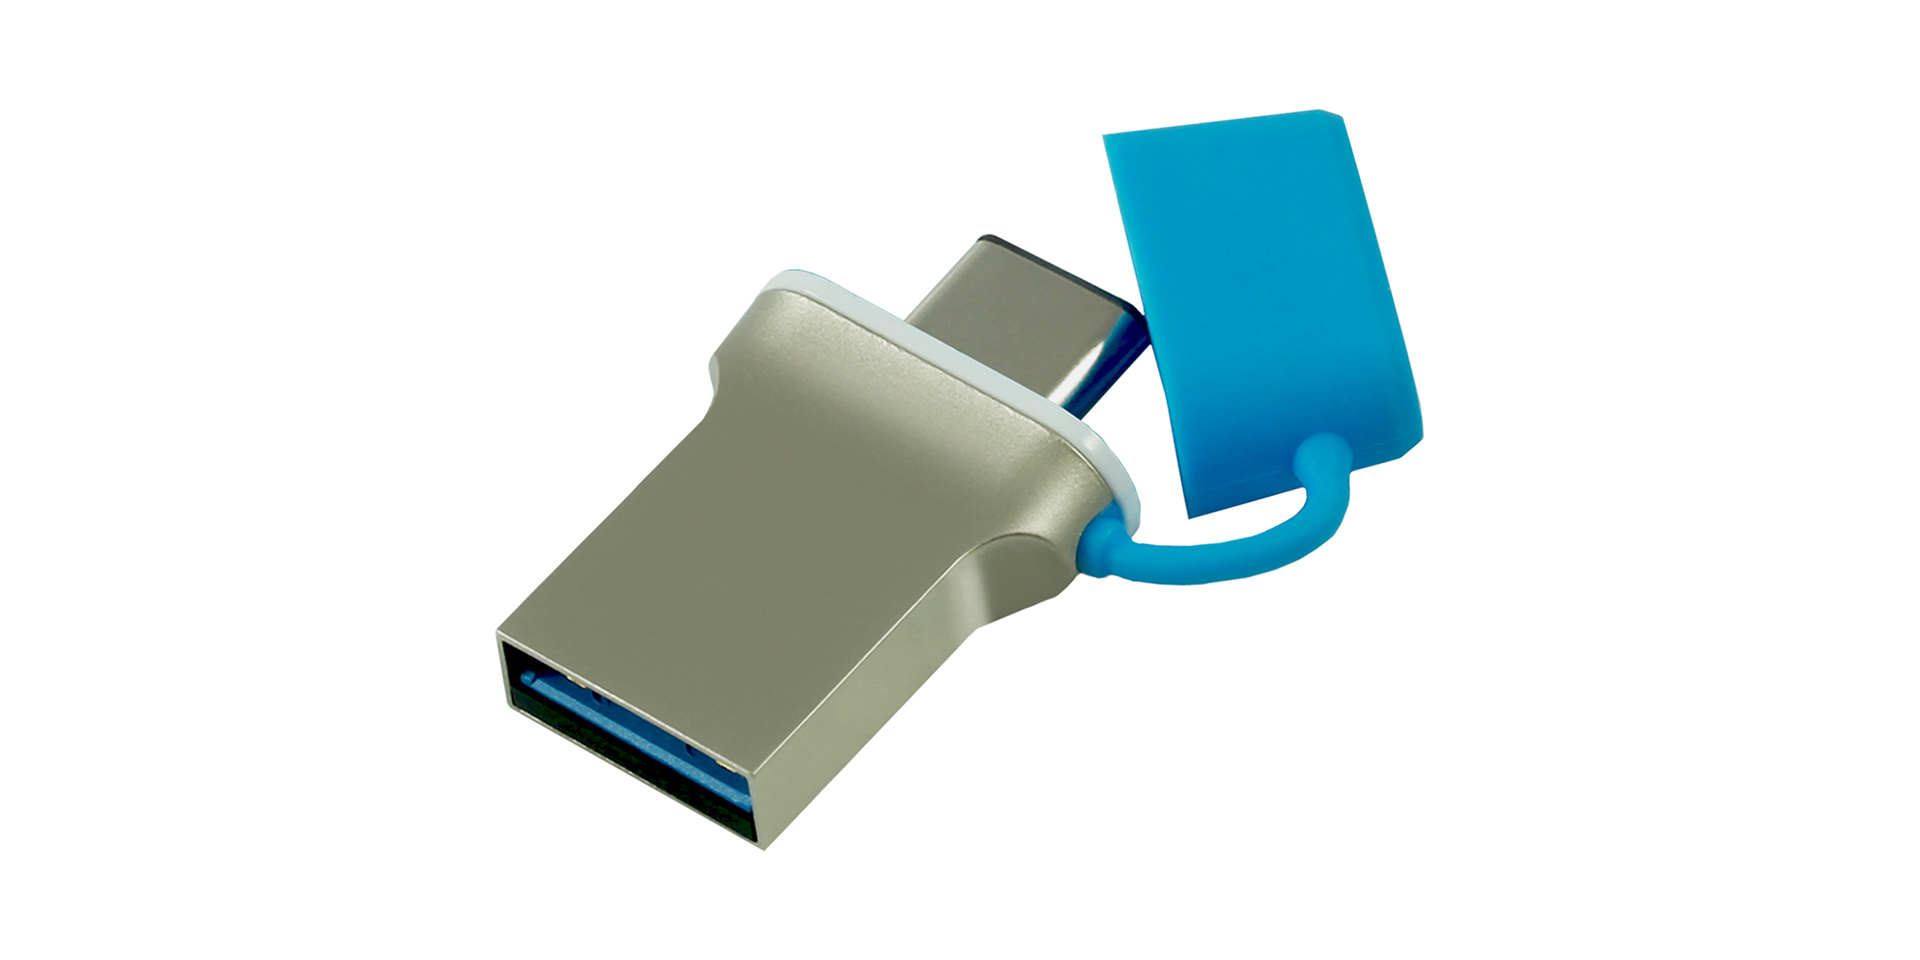 ODD USB for advertising agencies